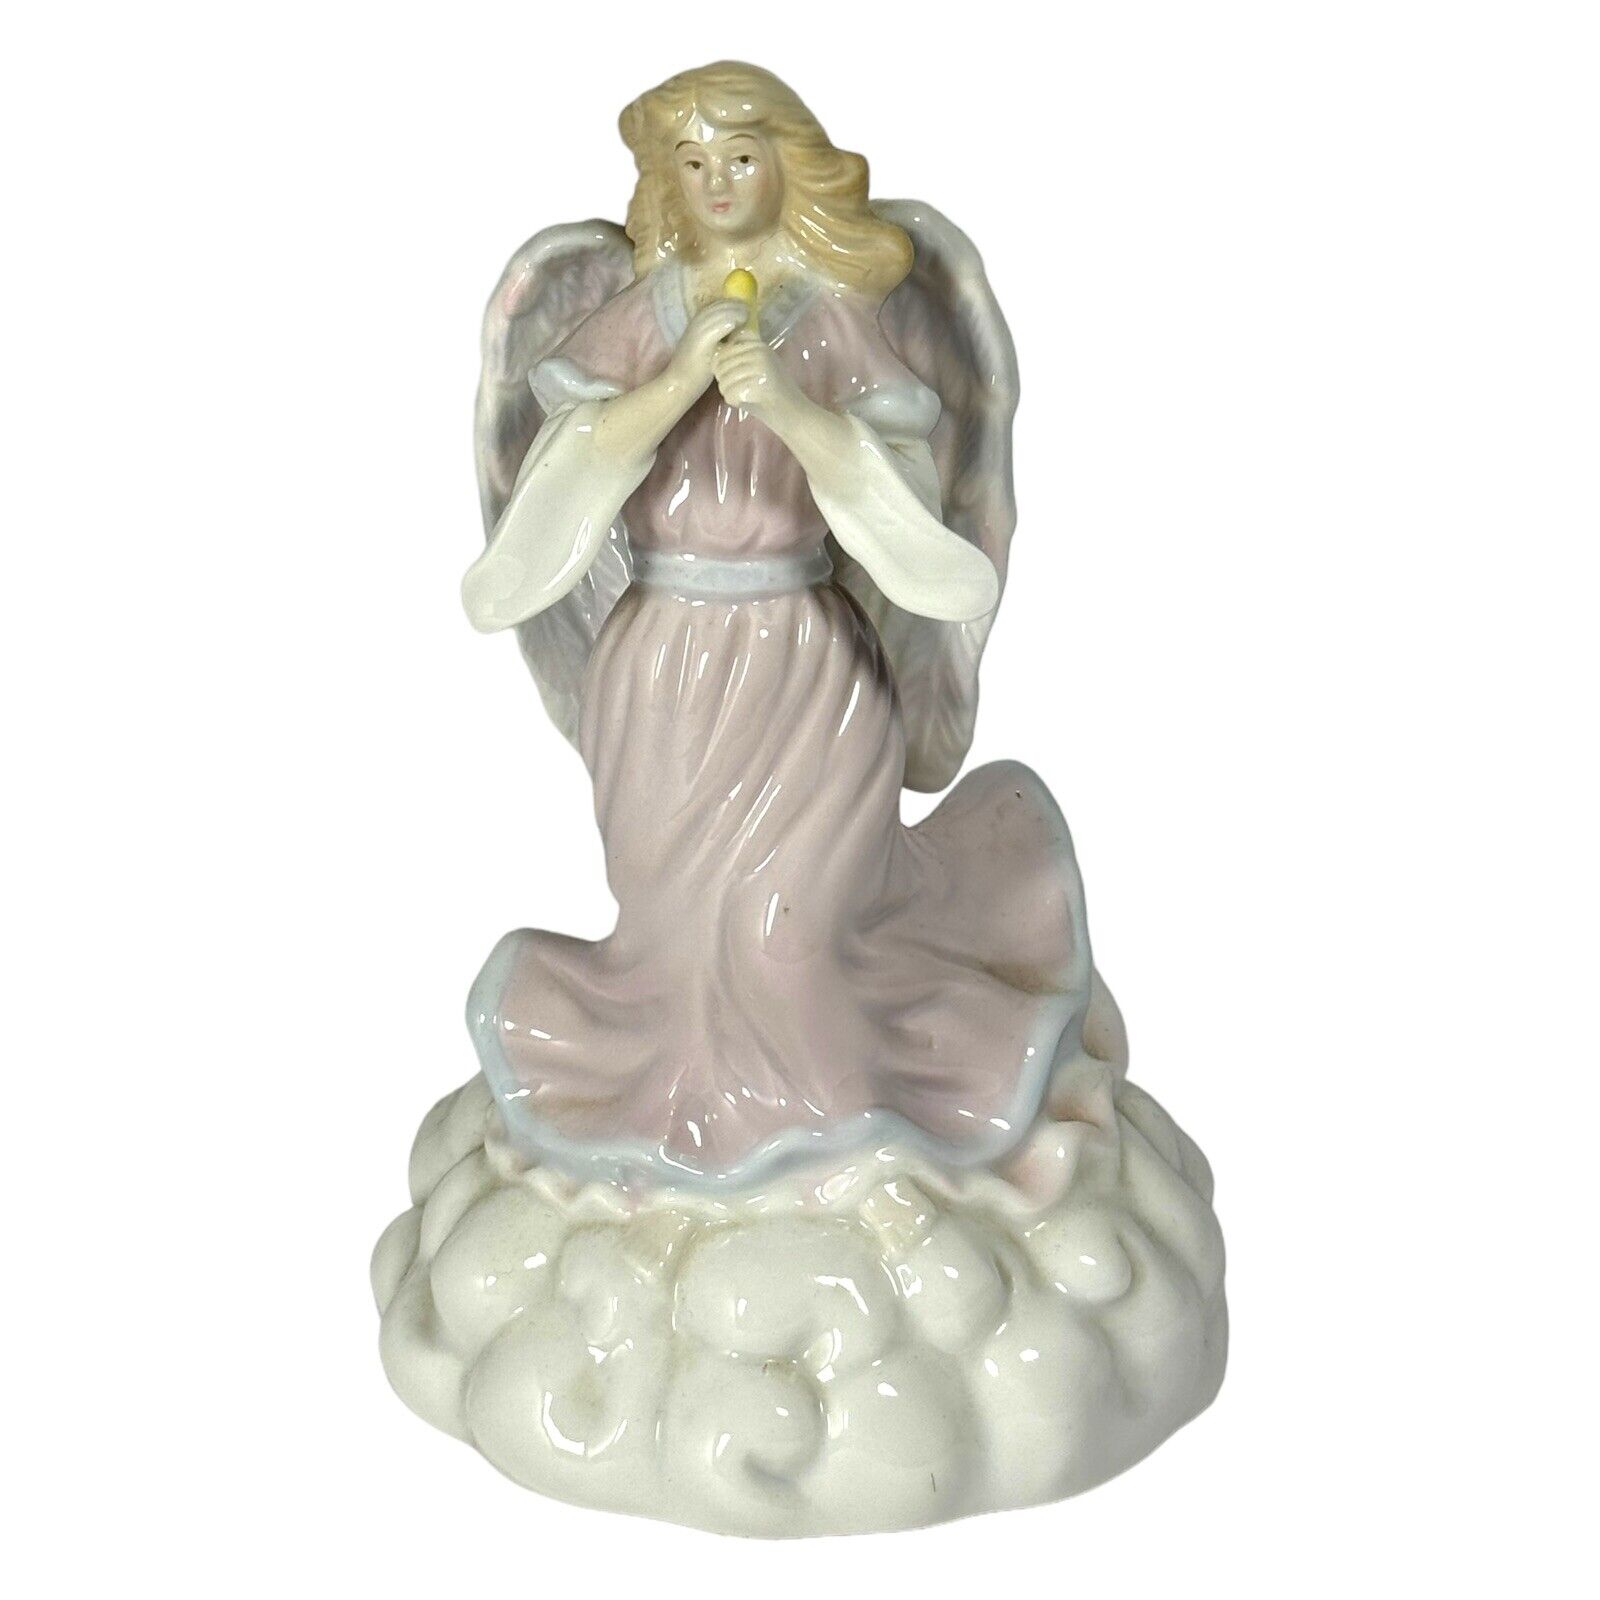 VTG Elegant Porcelain Inspirational Angel Figurine 1990's w/ Musical Instrument